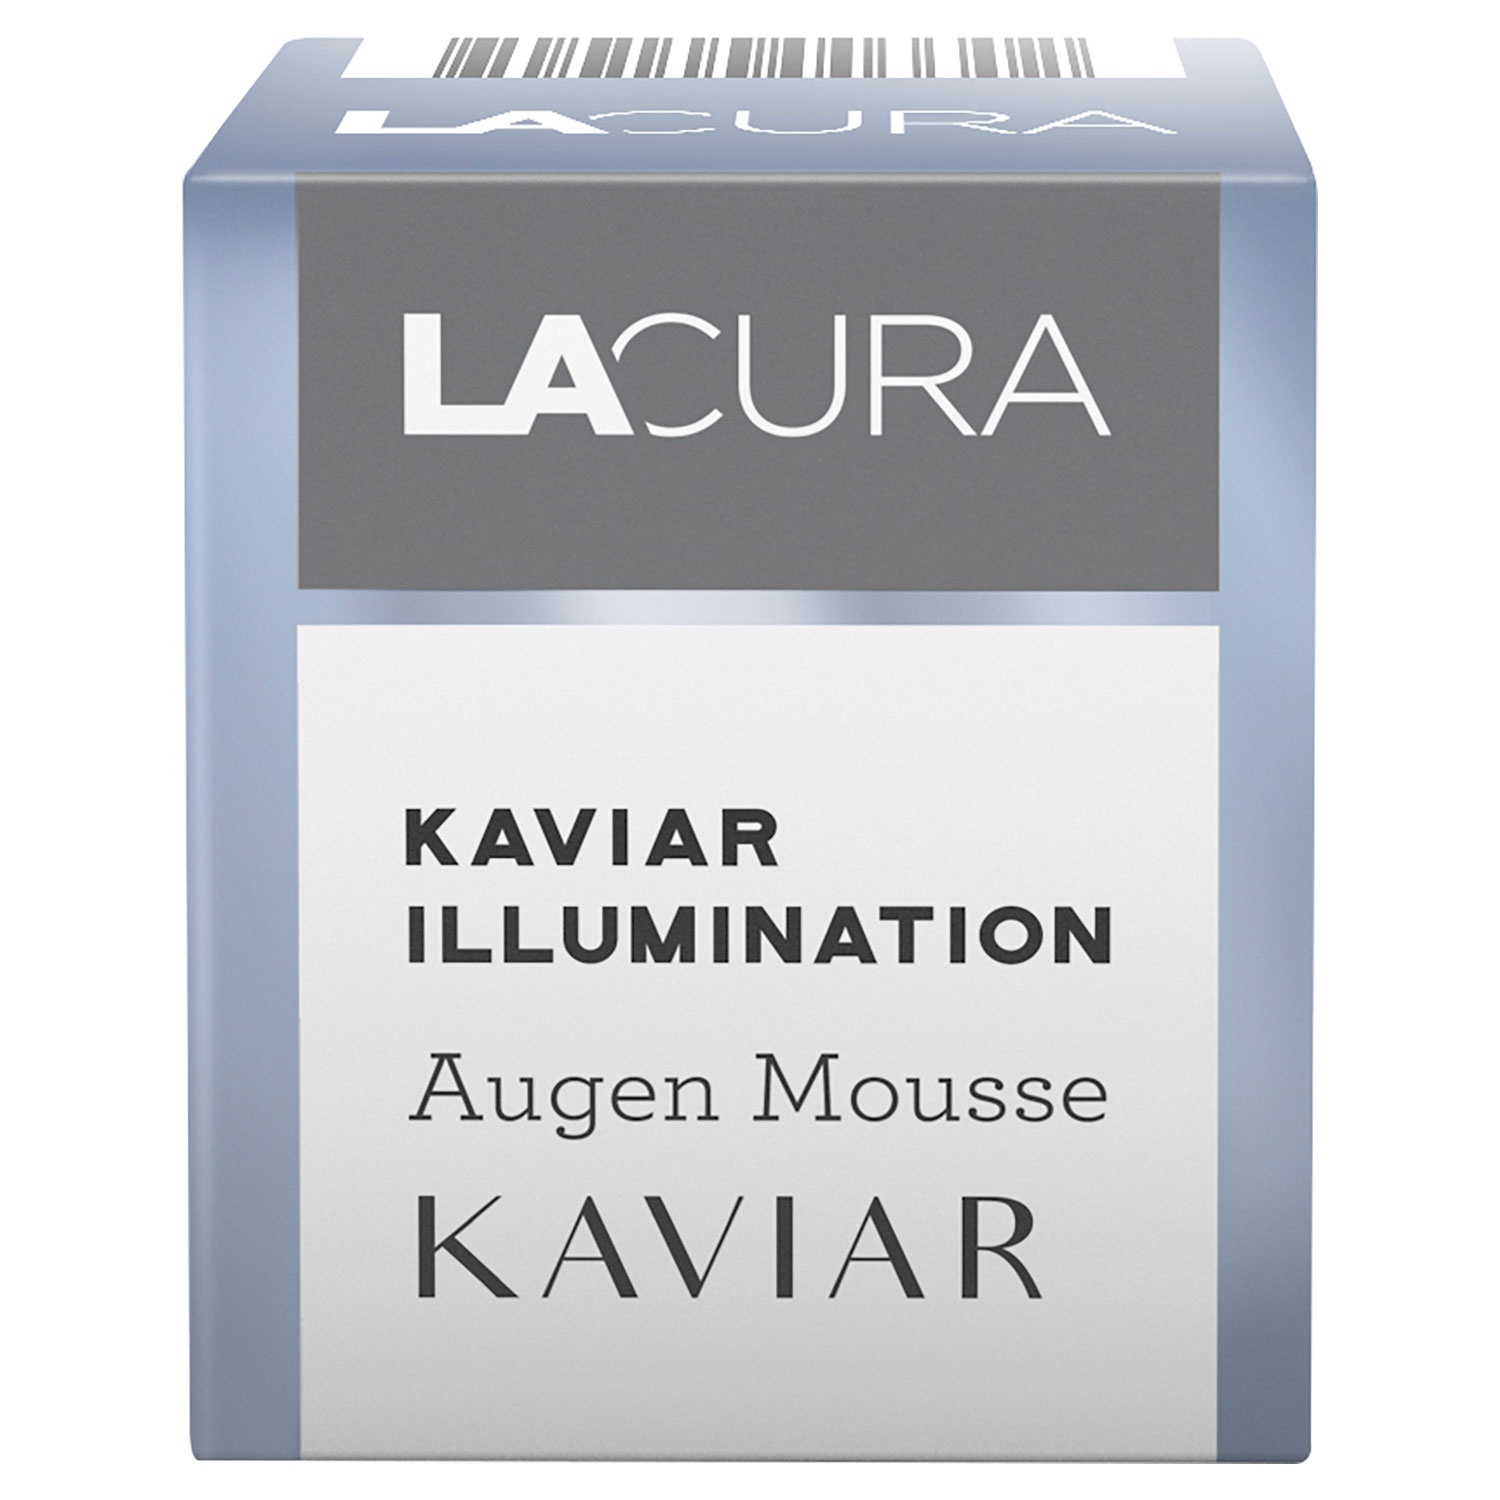 LACURA Kaviar Illumination Augenmousse 15 ml